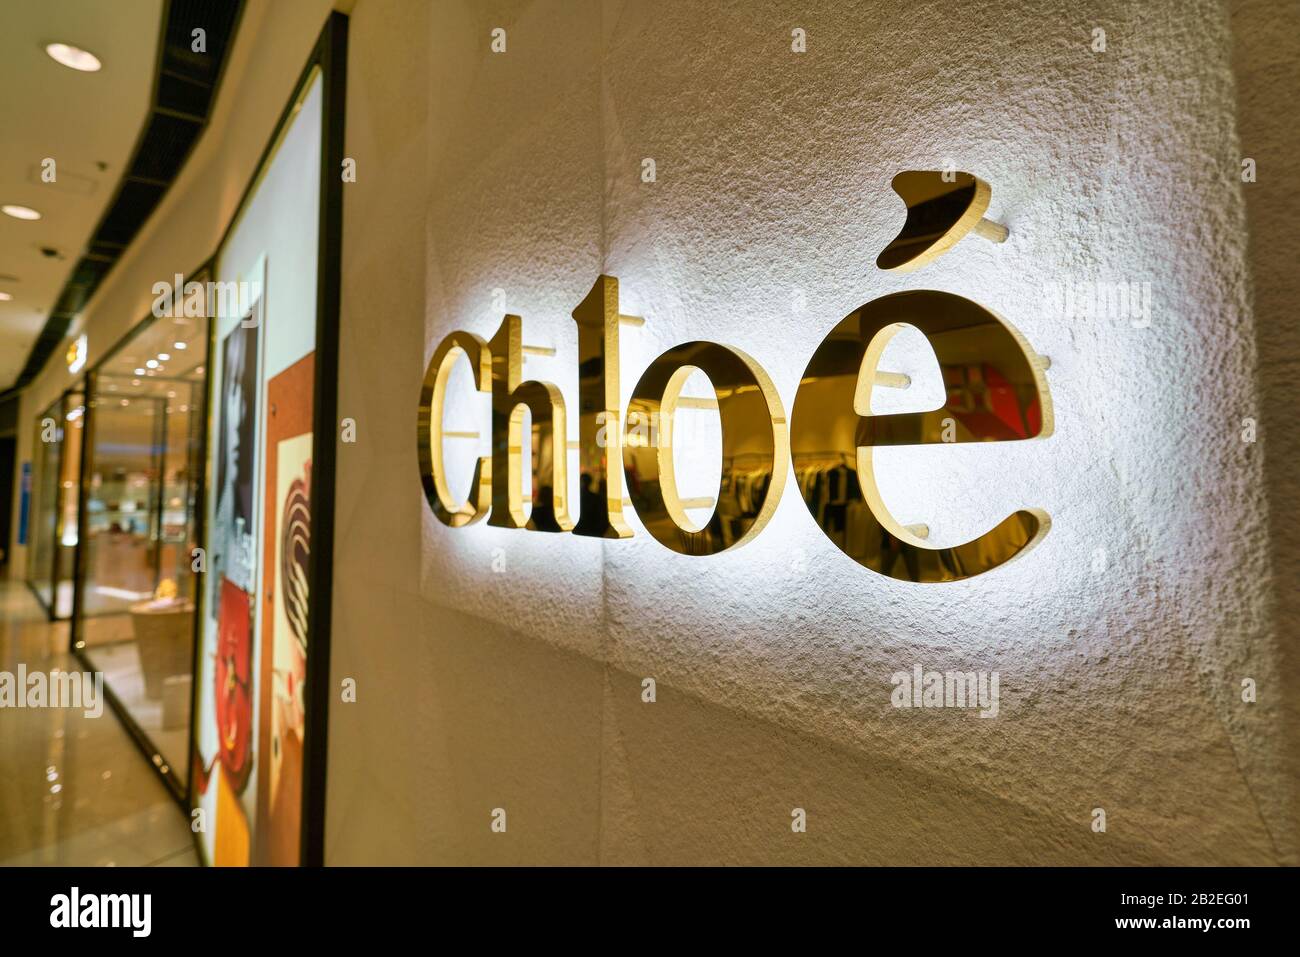 Hong KONG, CHINE - VERS JANVIER 2019 : gros plan du panneau Chloe vu dans  un magasin du centre commercial de la sfi à Hong Kong. Chloe est une maison  de mode